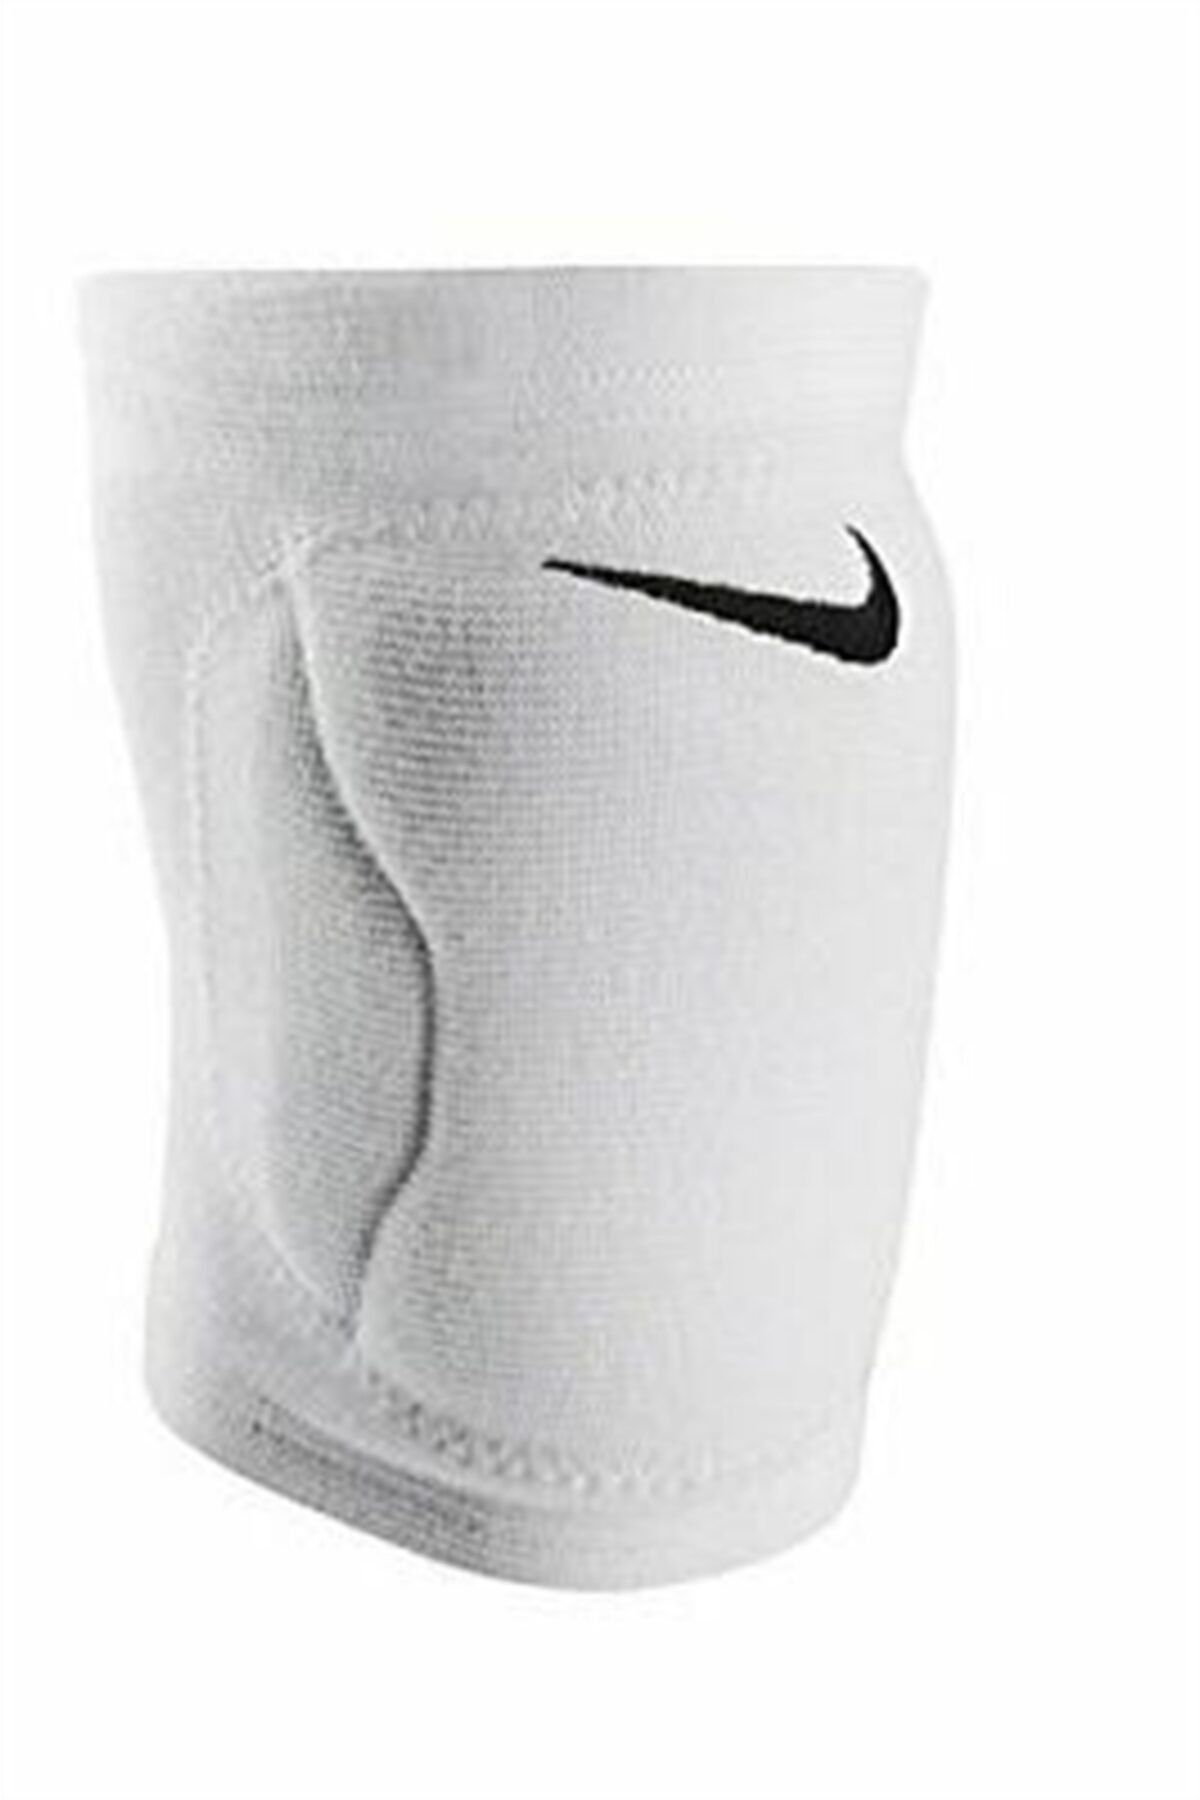 Nike Streak Volleyball Knee Pad Xl/xxl Dizlik - N.vp.05.100.xx